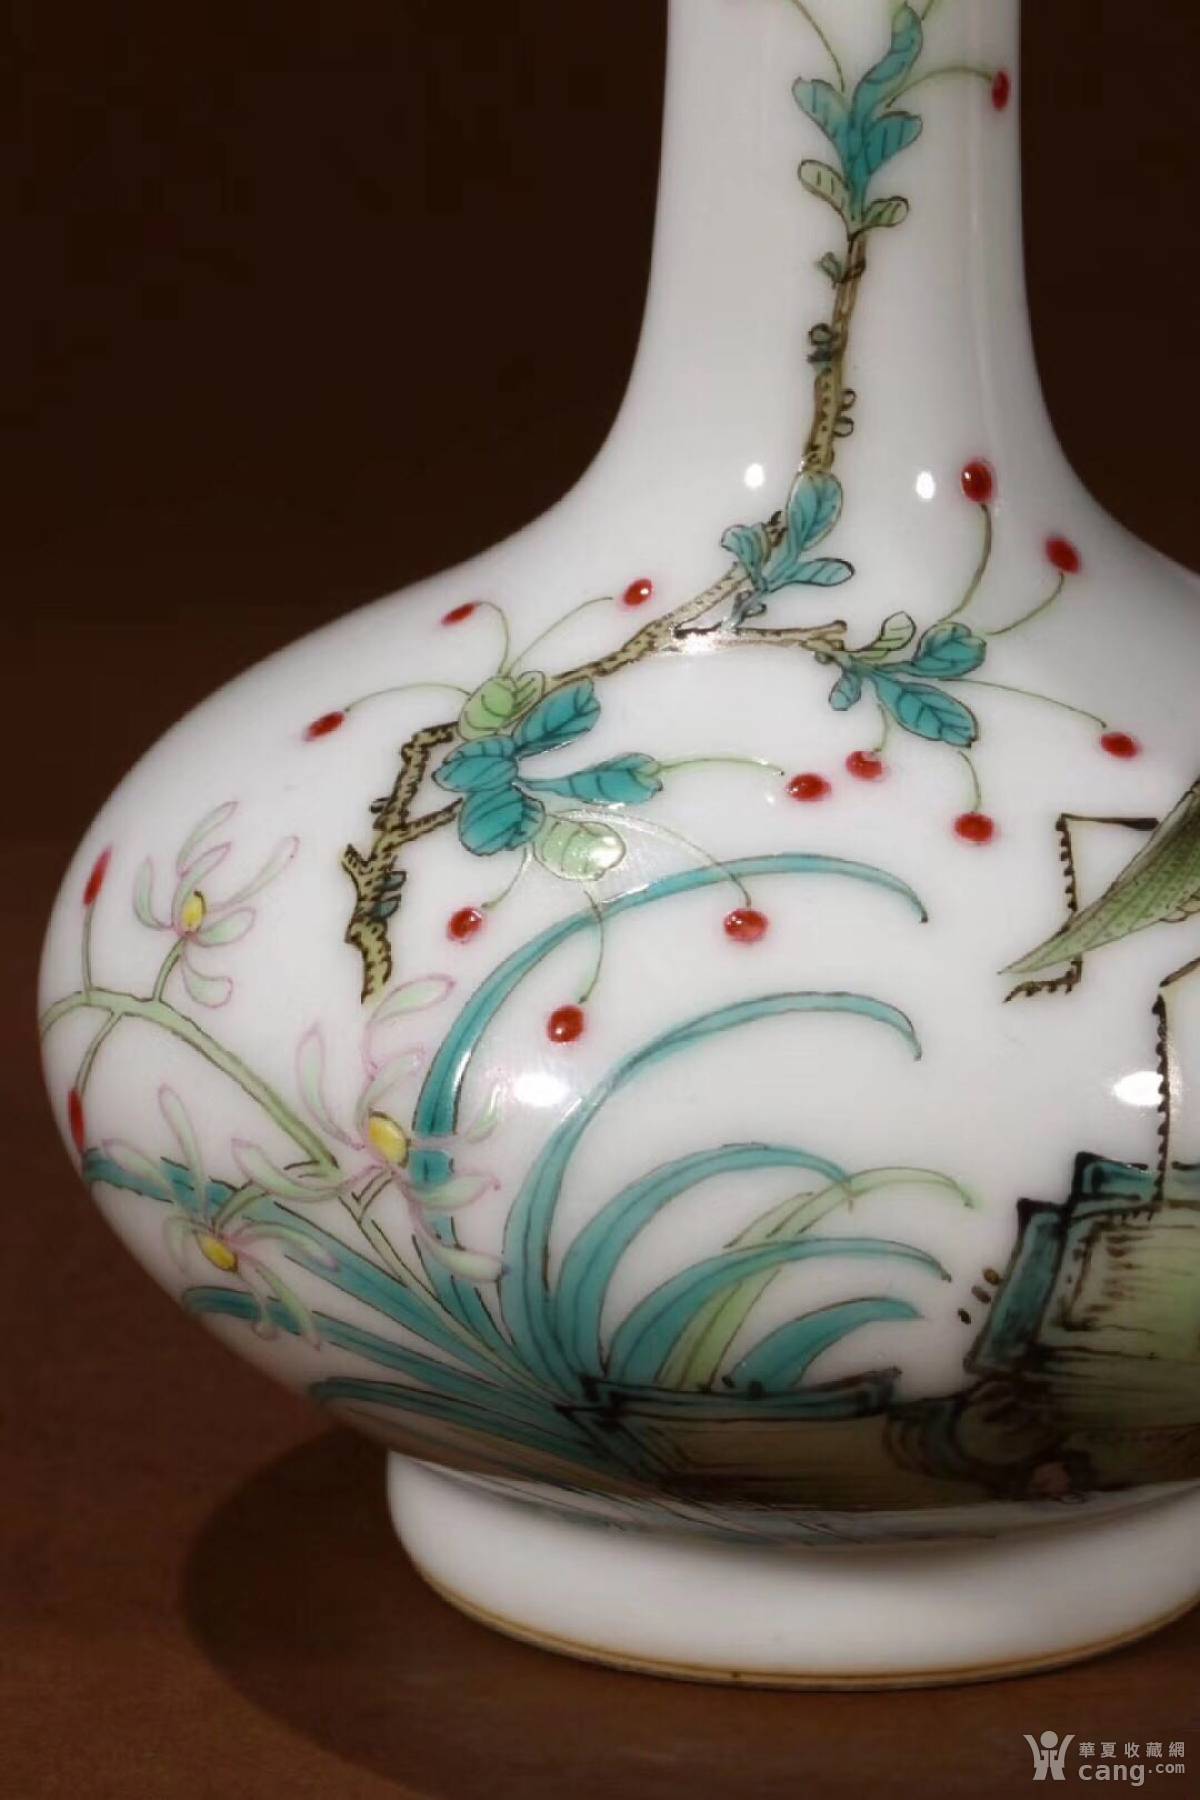 圆明园旧藏,清乾隆珐琅彩瓷器,花卉蜻蜓纹长颈瓶一对